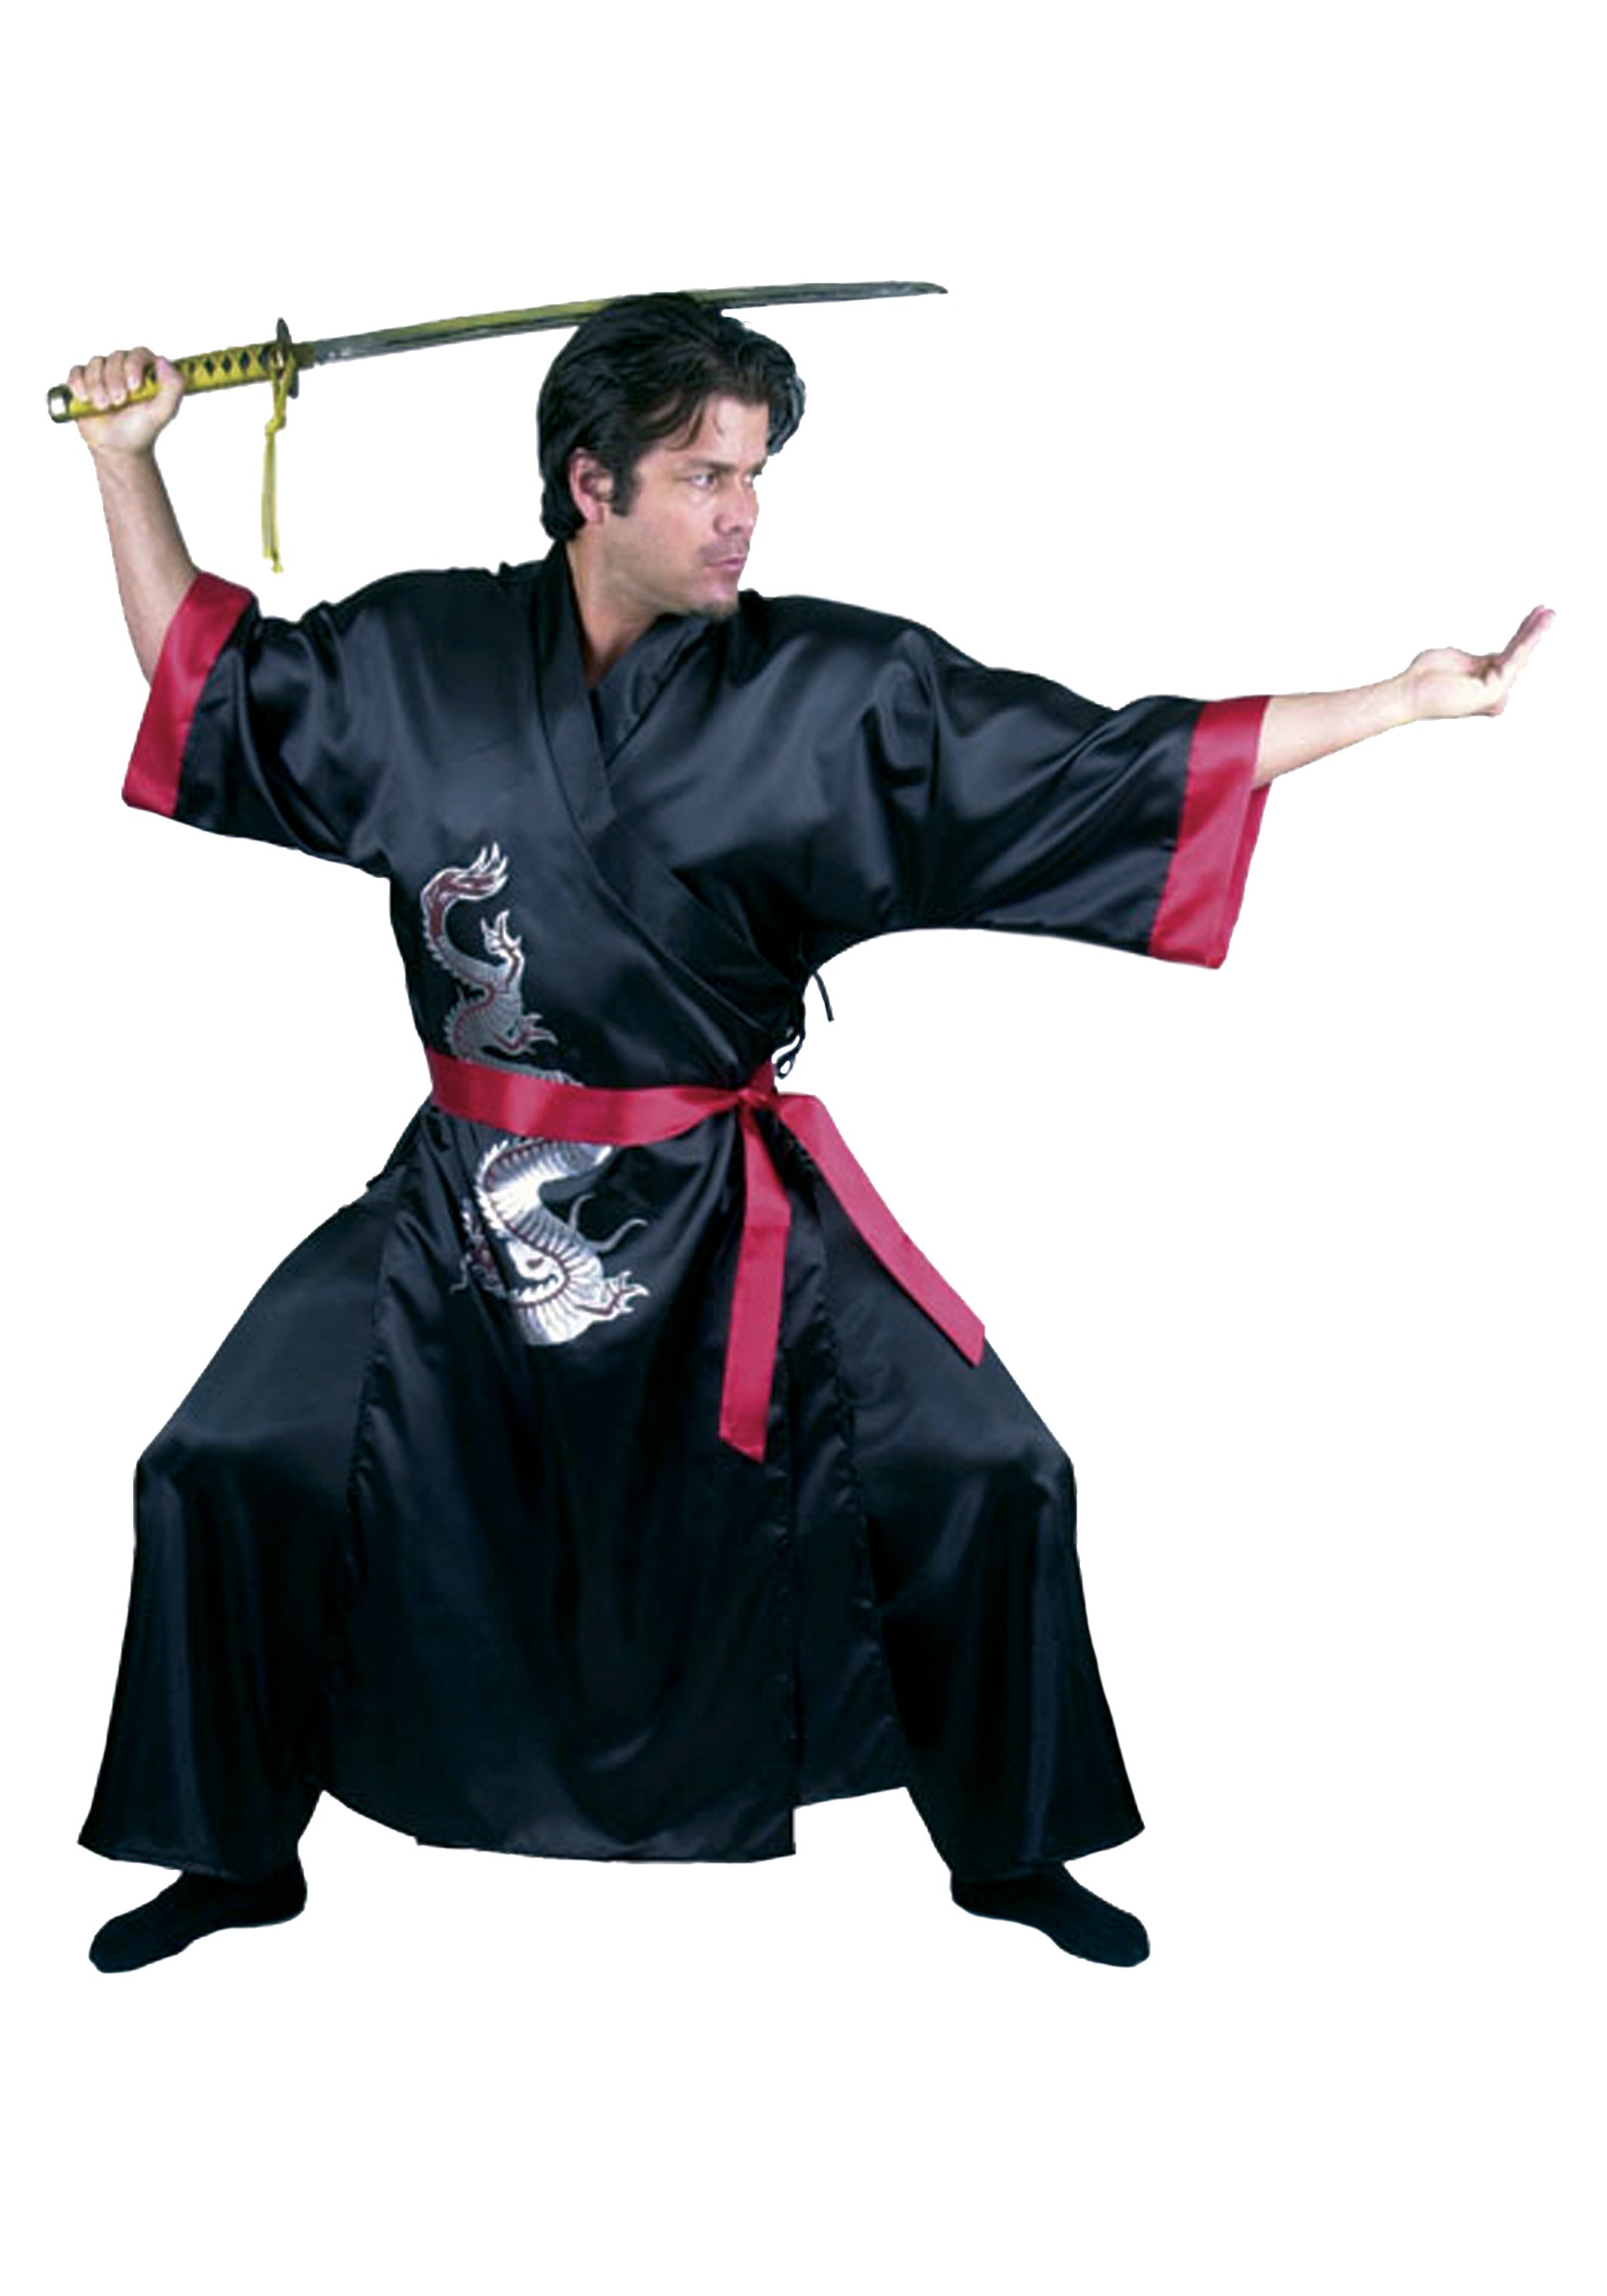 Adult Costume Of The Black Samurai